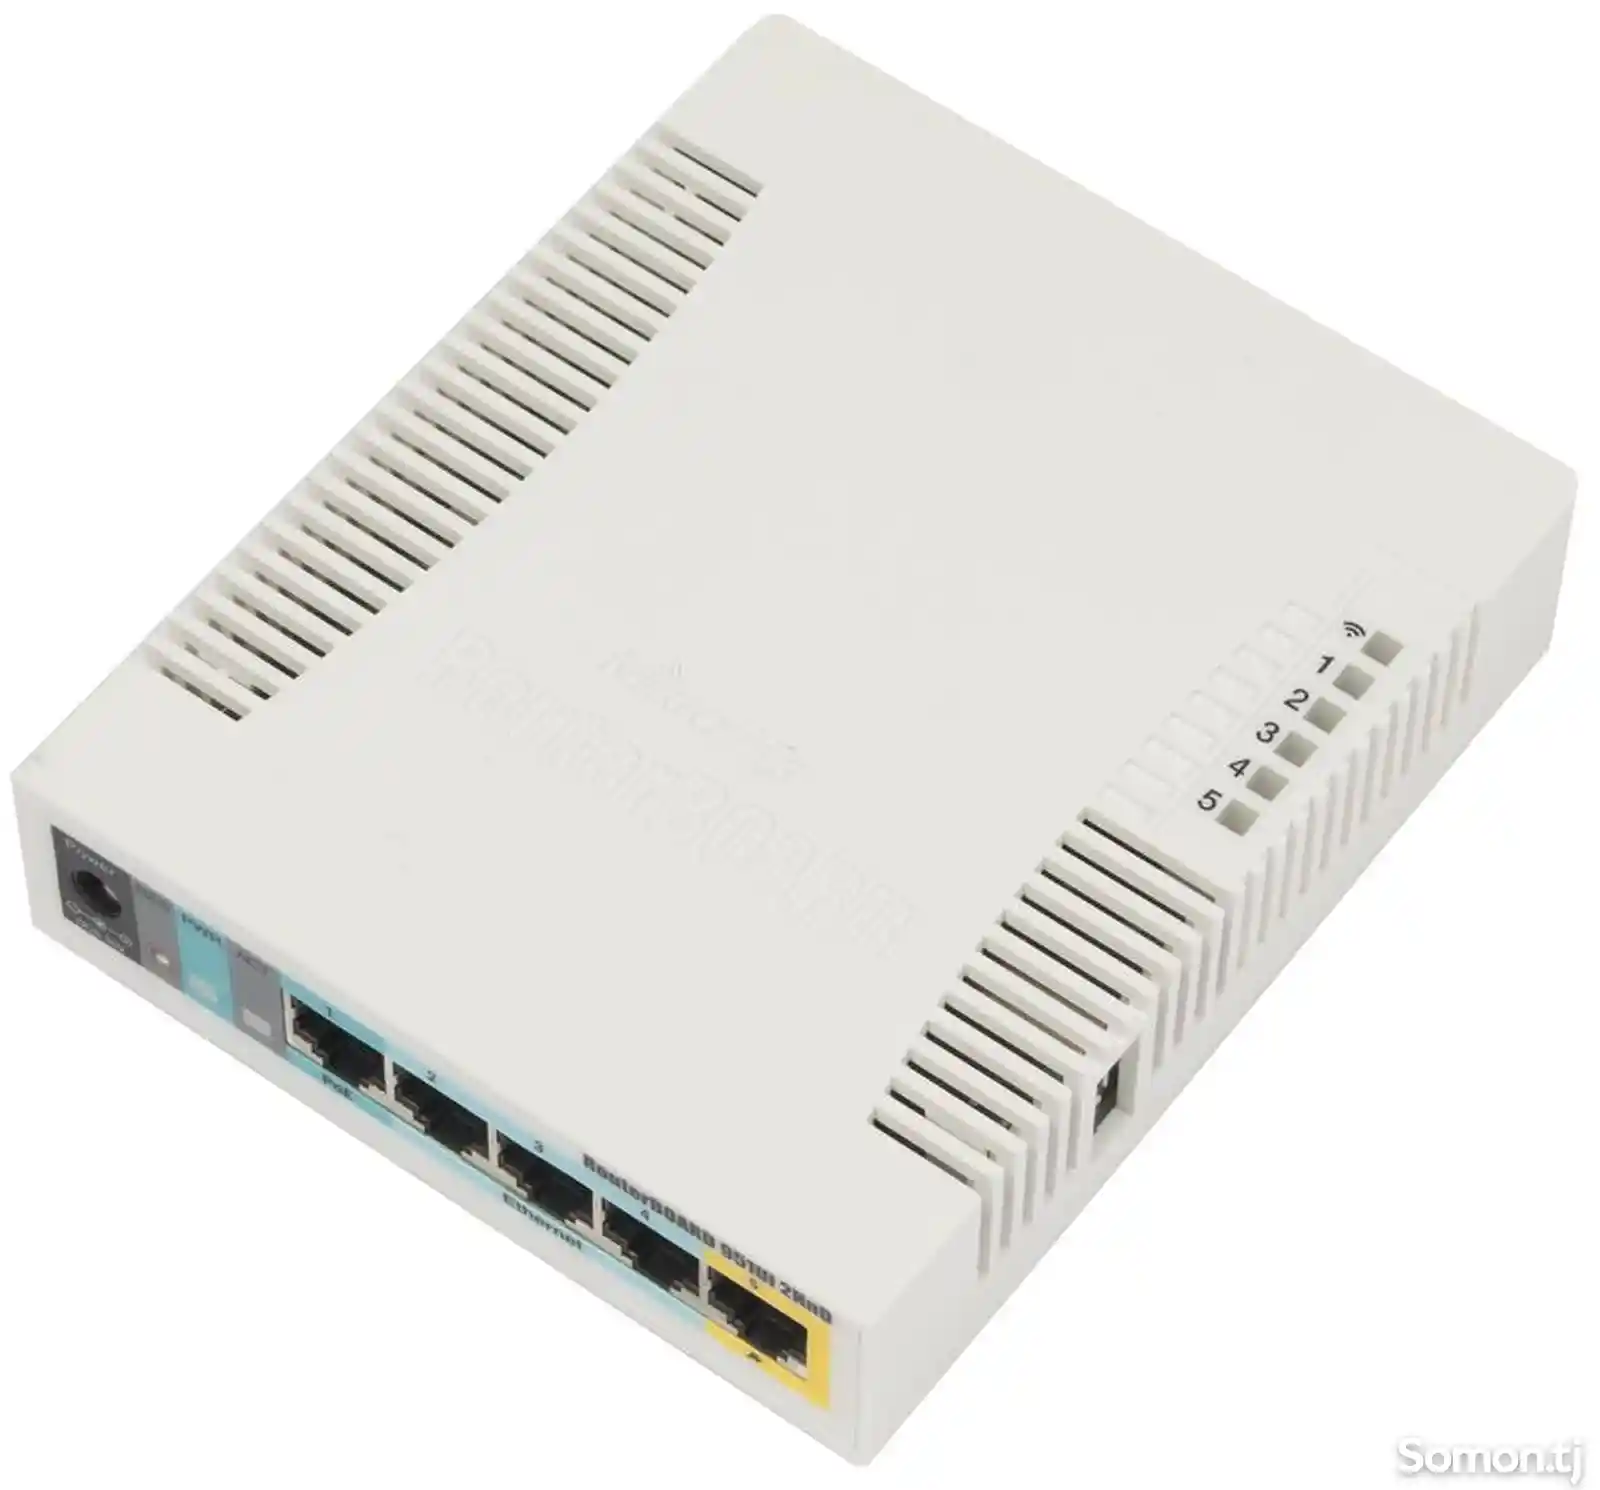 WiFi-роутер MikroTik RB951Ui 2HnD-7